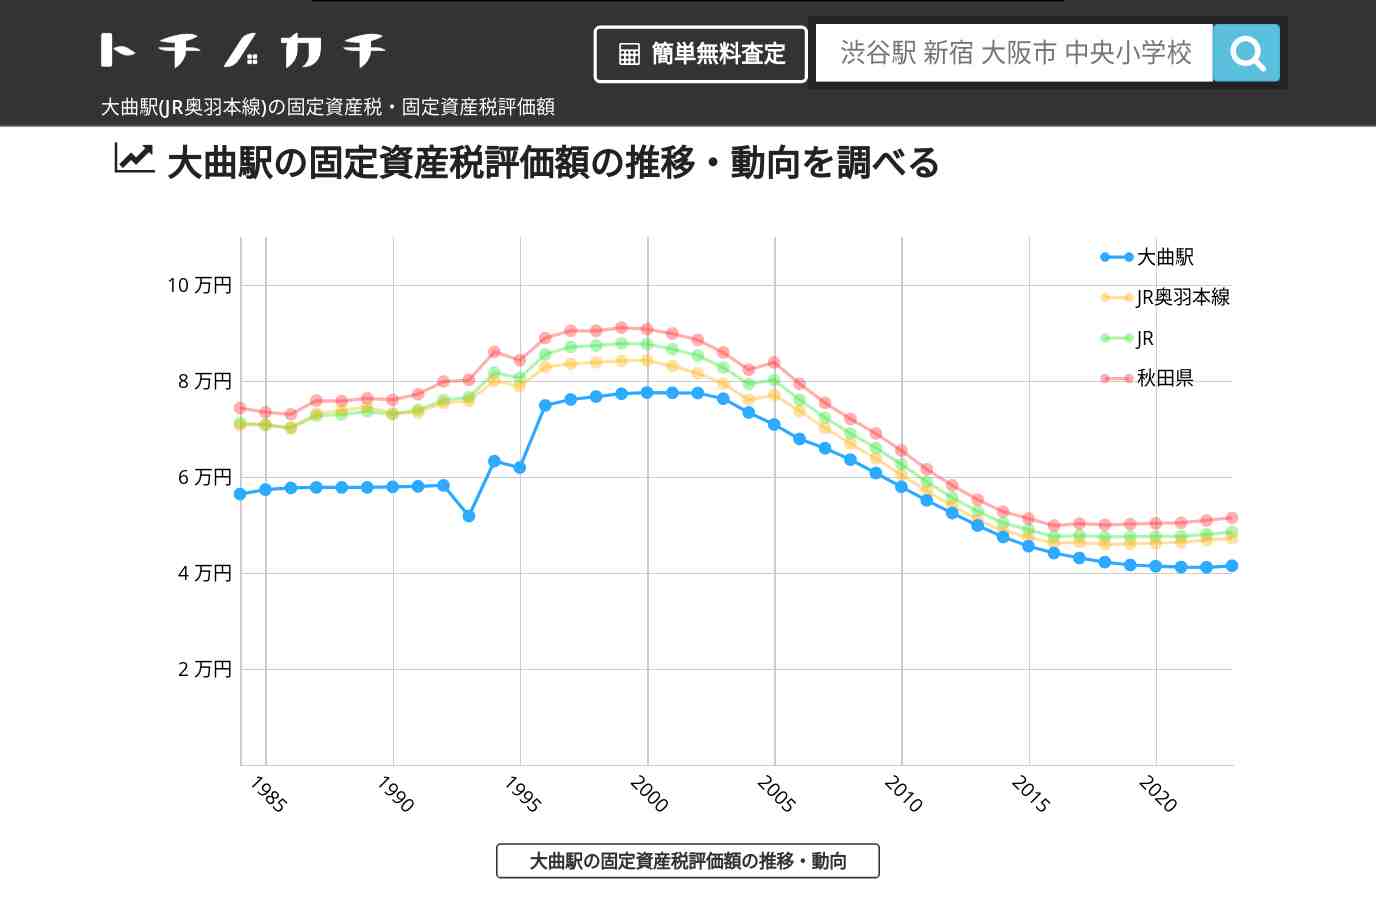 大曲駅(JR奥羽本線)の固定資産税・固定資産税評価額 | トチノカチ